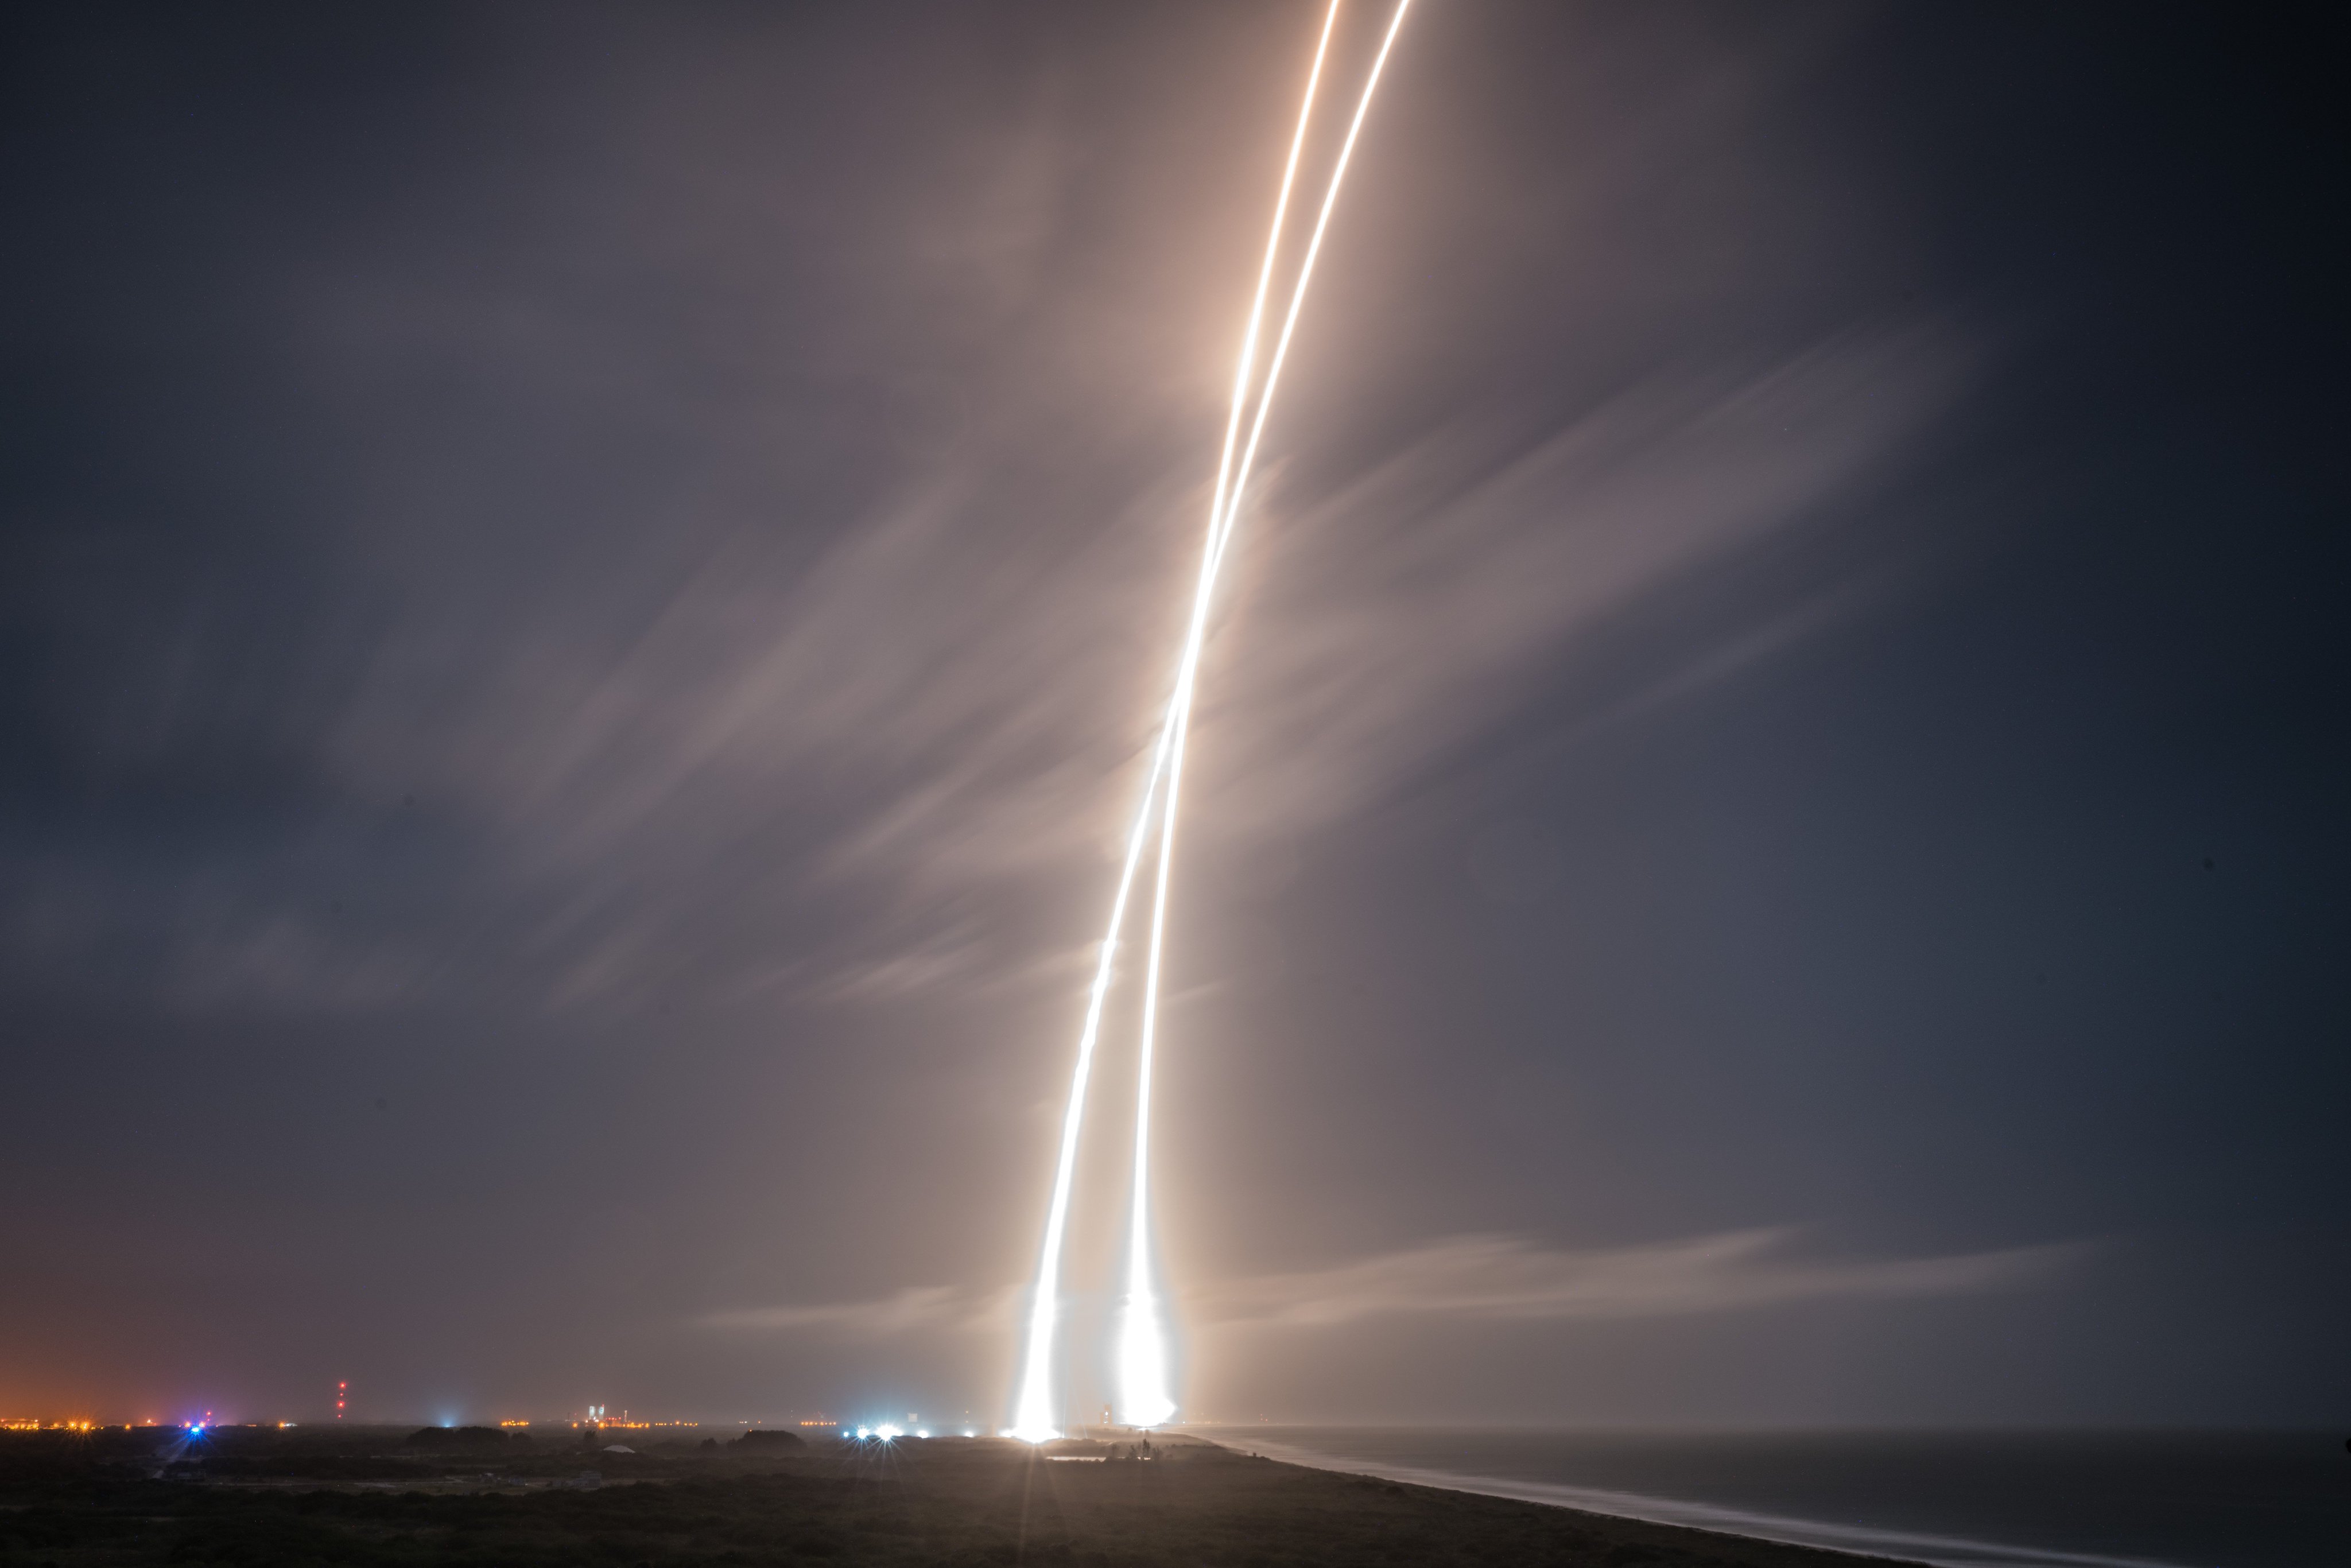 Thông tin về chuyến phóng và hạ cánh của SpaceX trên Twitter (SpaceX Launch and Landing Updates on Twitter): Bạn đam mê khoa học công nghệ, đặc biệt là các chuyến phóng tên lửa của SpaceX? Tìm kiếm thông tin về các chuyến phóng và hạ cánh của SpaceX ngay trên Twitter! Những thông tin nhanh chóng và chính xác sẽ giúp bạn cập nhật tất cả những gì đang diễn ra trong lĩnh vực này.